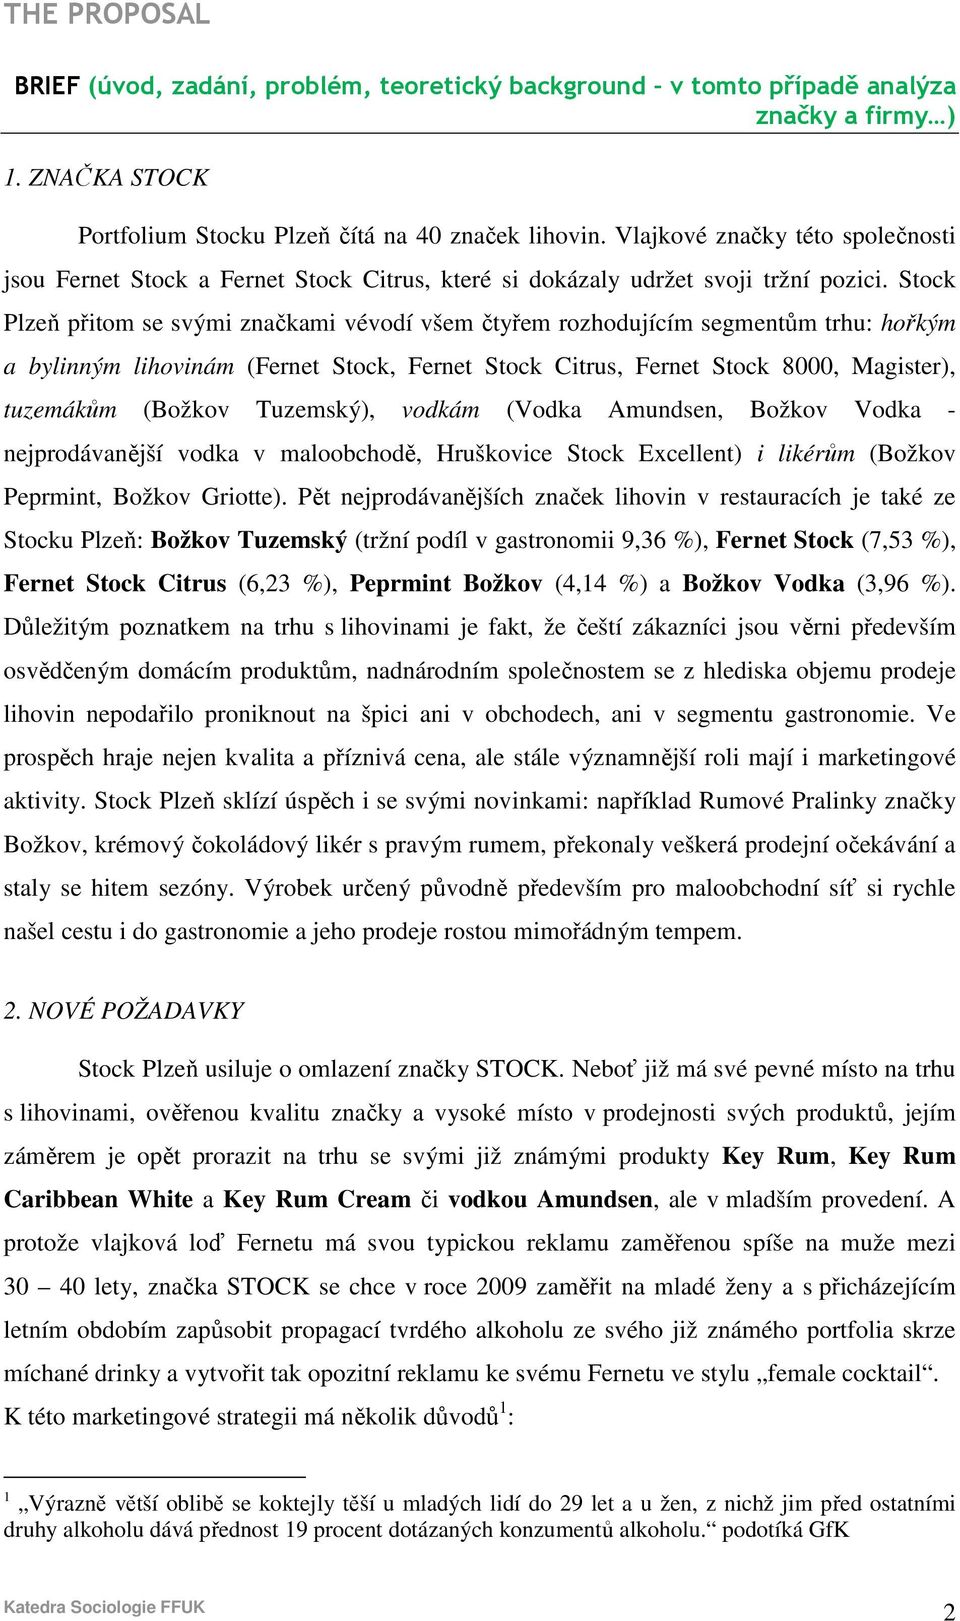 Stock Plzeň přitom se svými značkami vévodí všem čtyřem rozhodujícím segmentům trhu: hořkým a bylinným lihovinám (Fernet Stock, Fernet Stock Citrus, Fernet Stock 8000, Magister), tuzemákům (Božkov